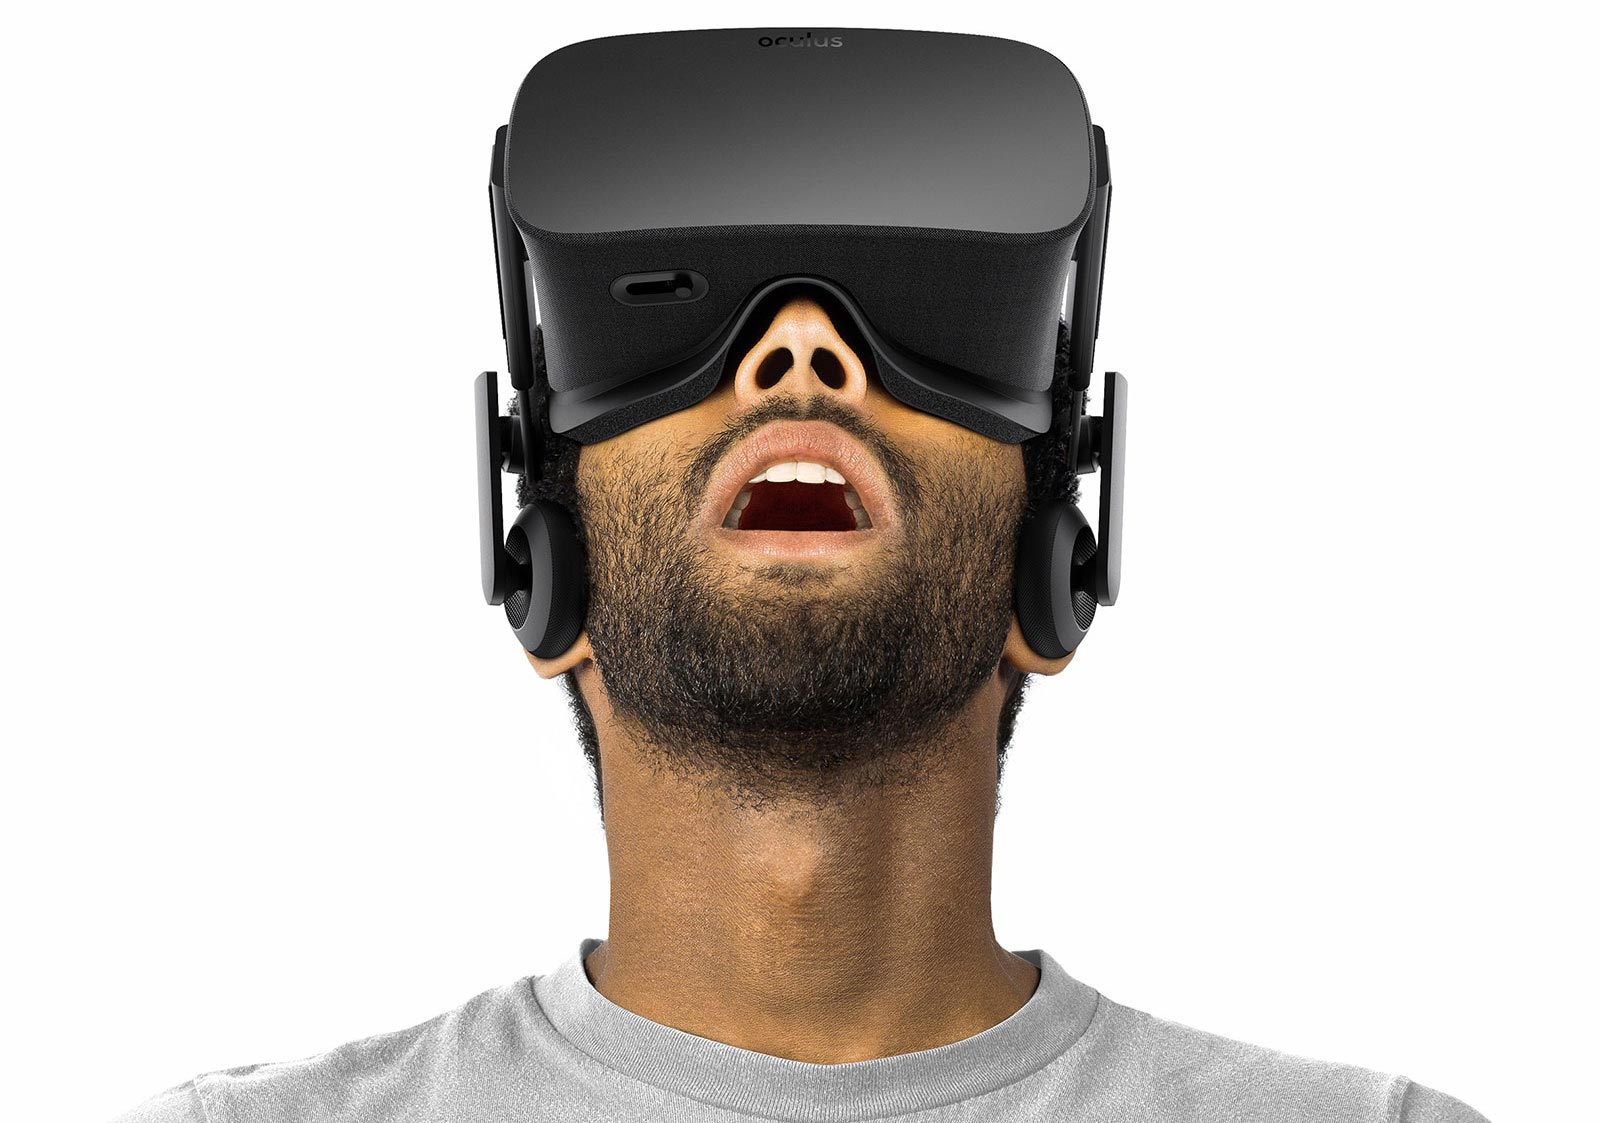 l'occulus rift, premier masque de realité virtuelle complet à être apparu sur le marché